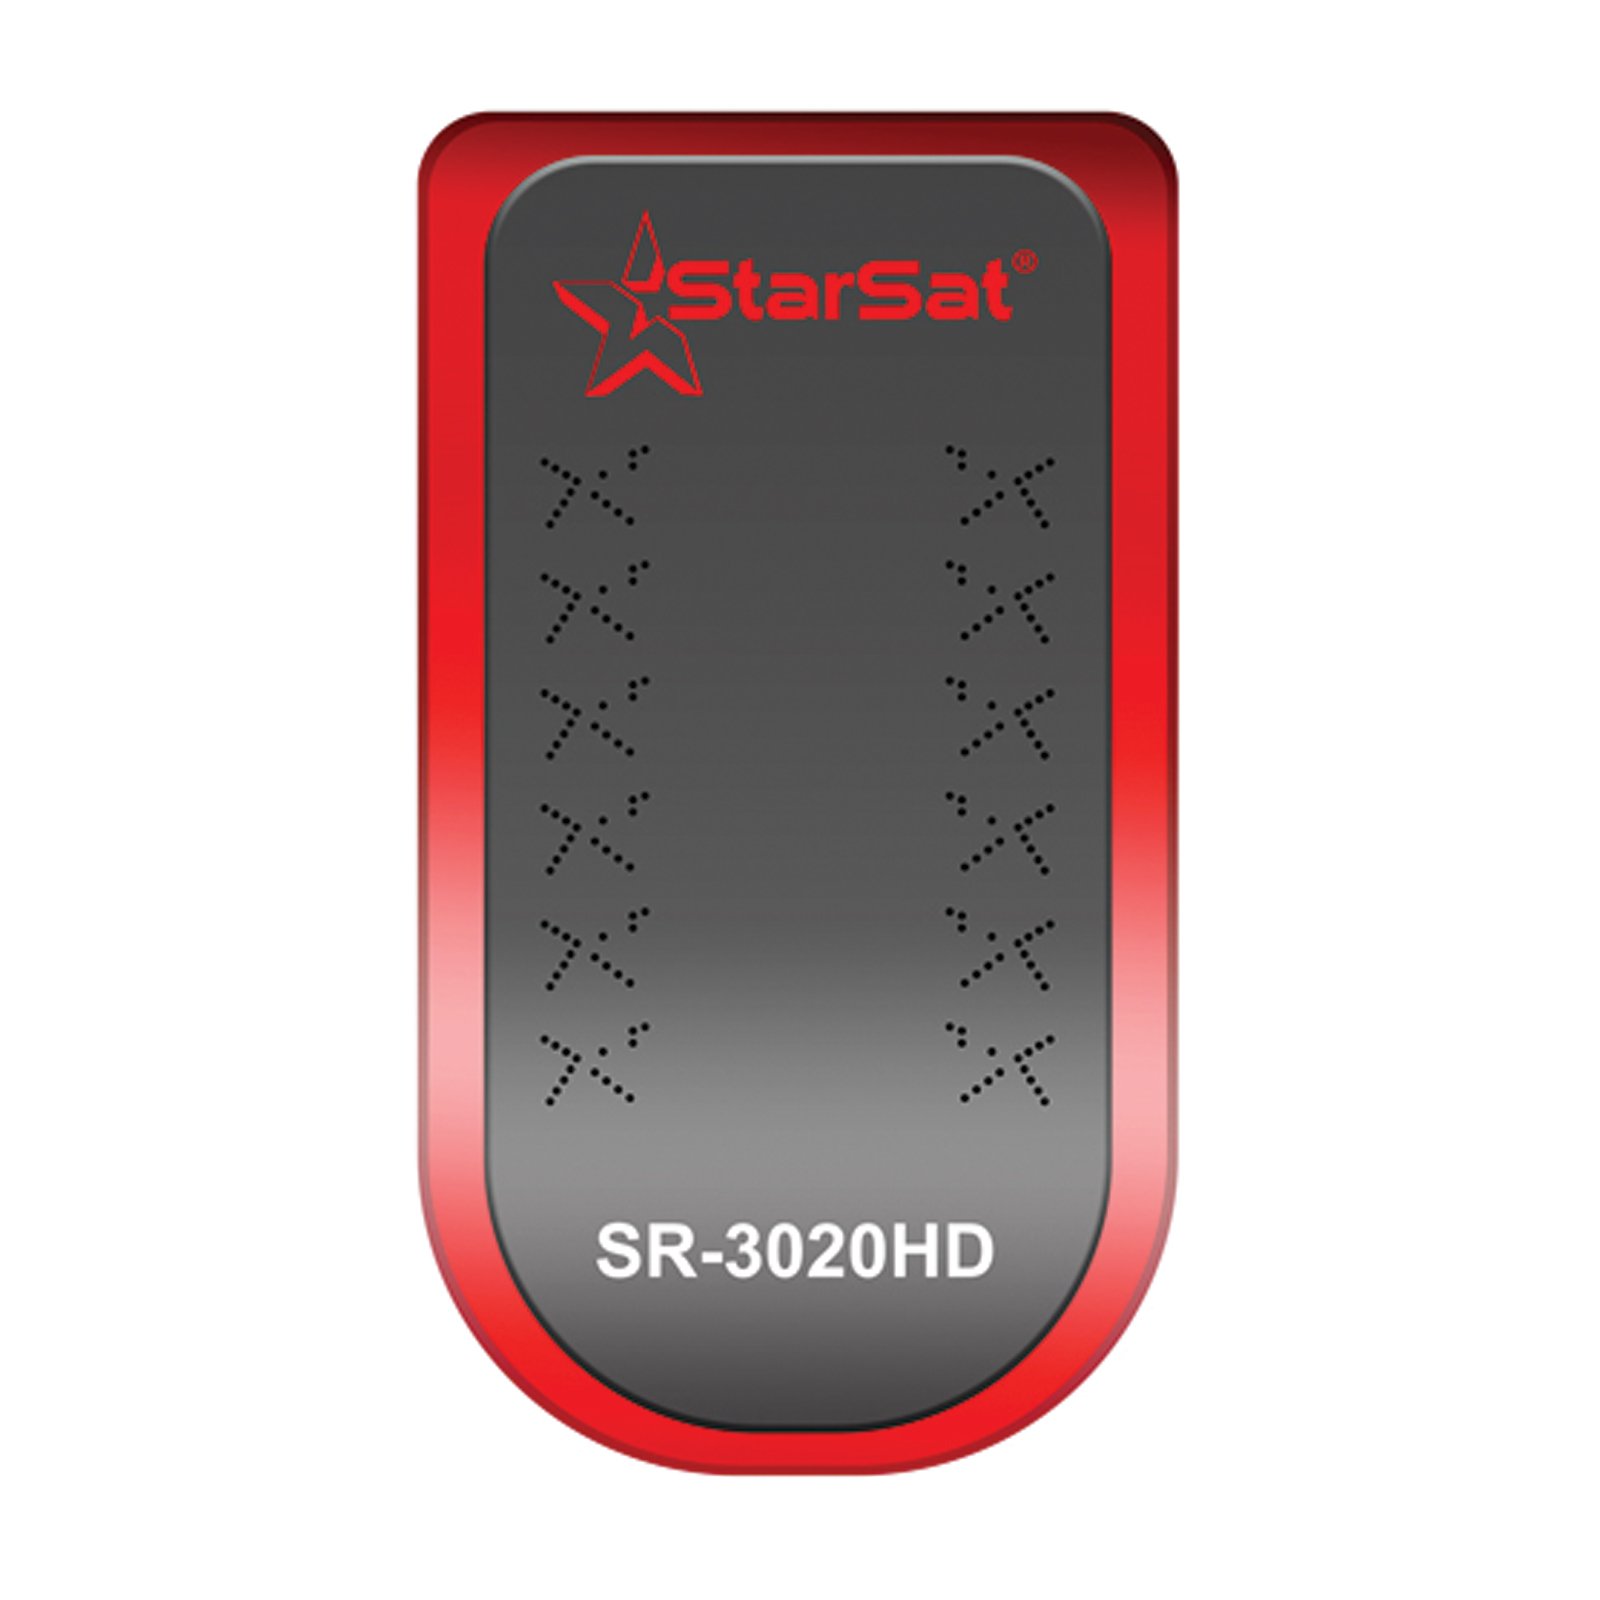 StarSat SR-3020HD Full HD1080, 2xUSB, HDMI, 5000 Channels